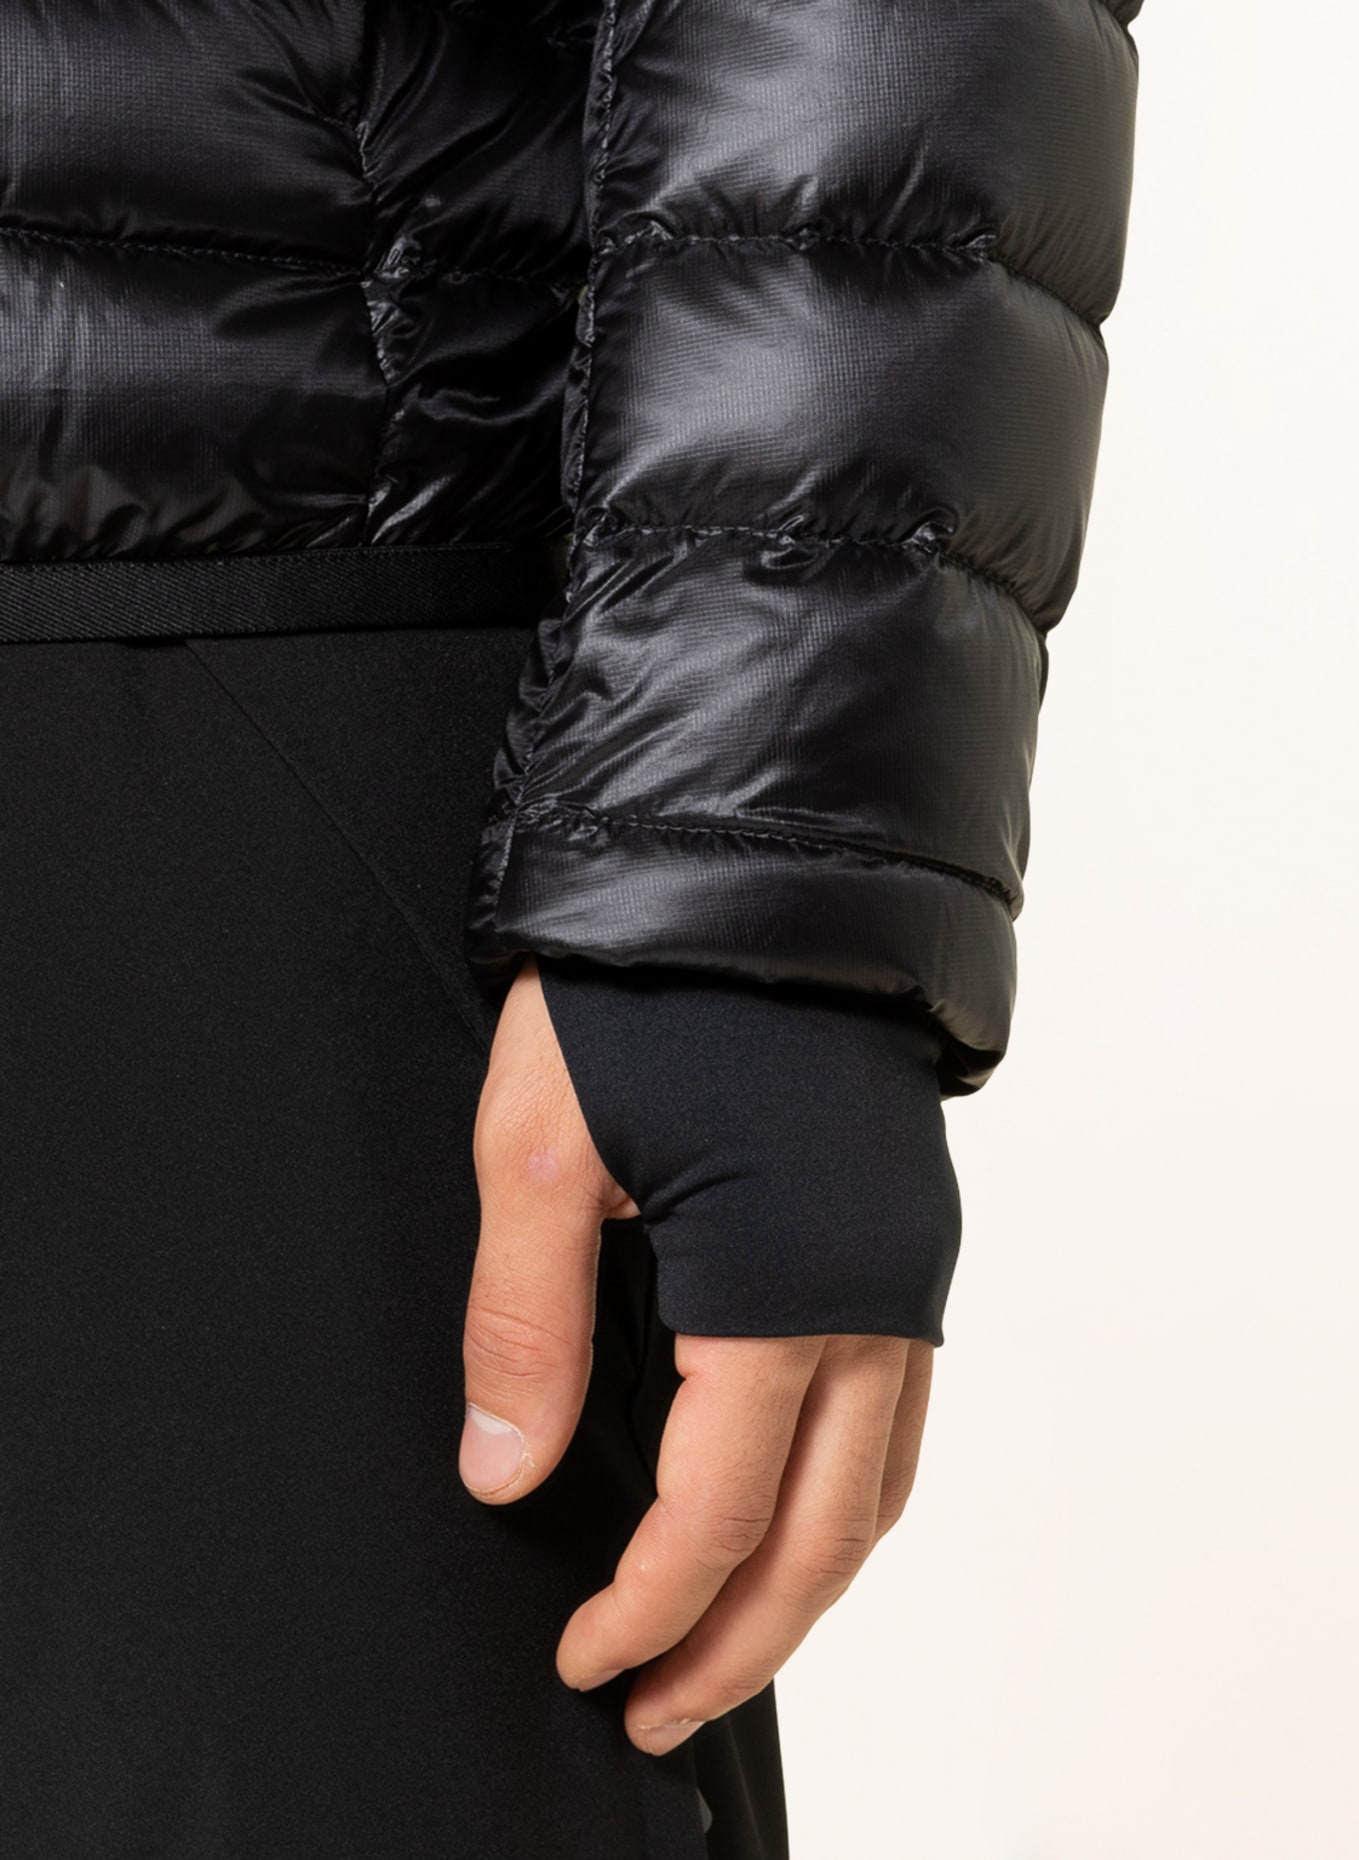 MONCLER GRENOBLE Lightweight down jacket HERS, Color: BLACK (Image 5)